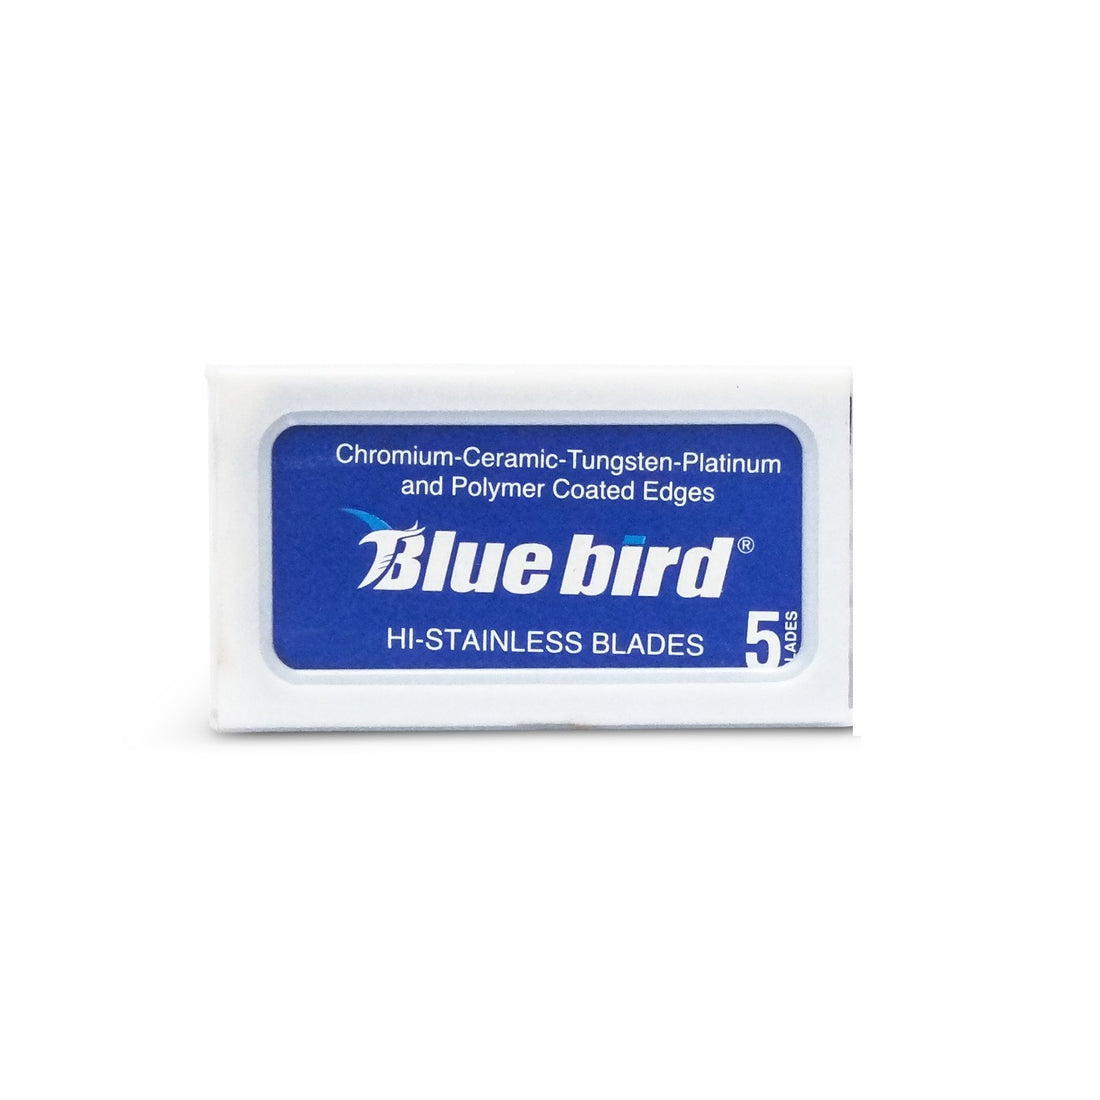 Blue Bird Hi-Stainless DE Blades 